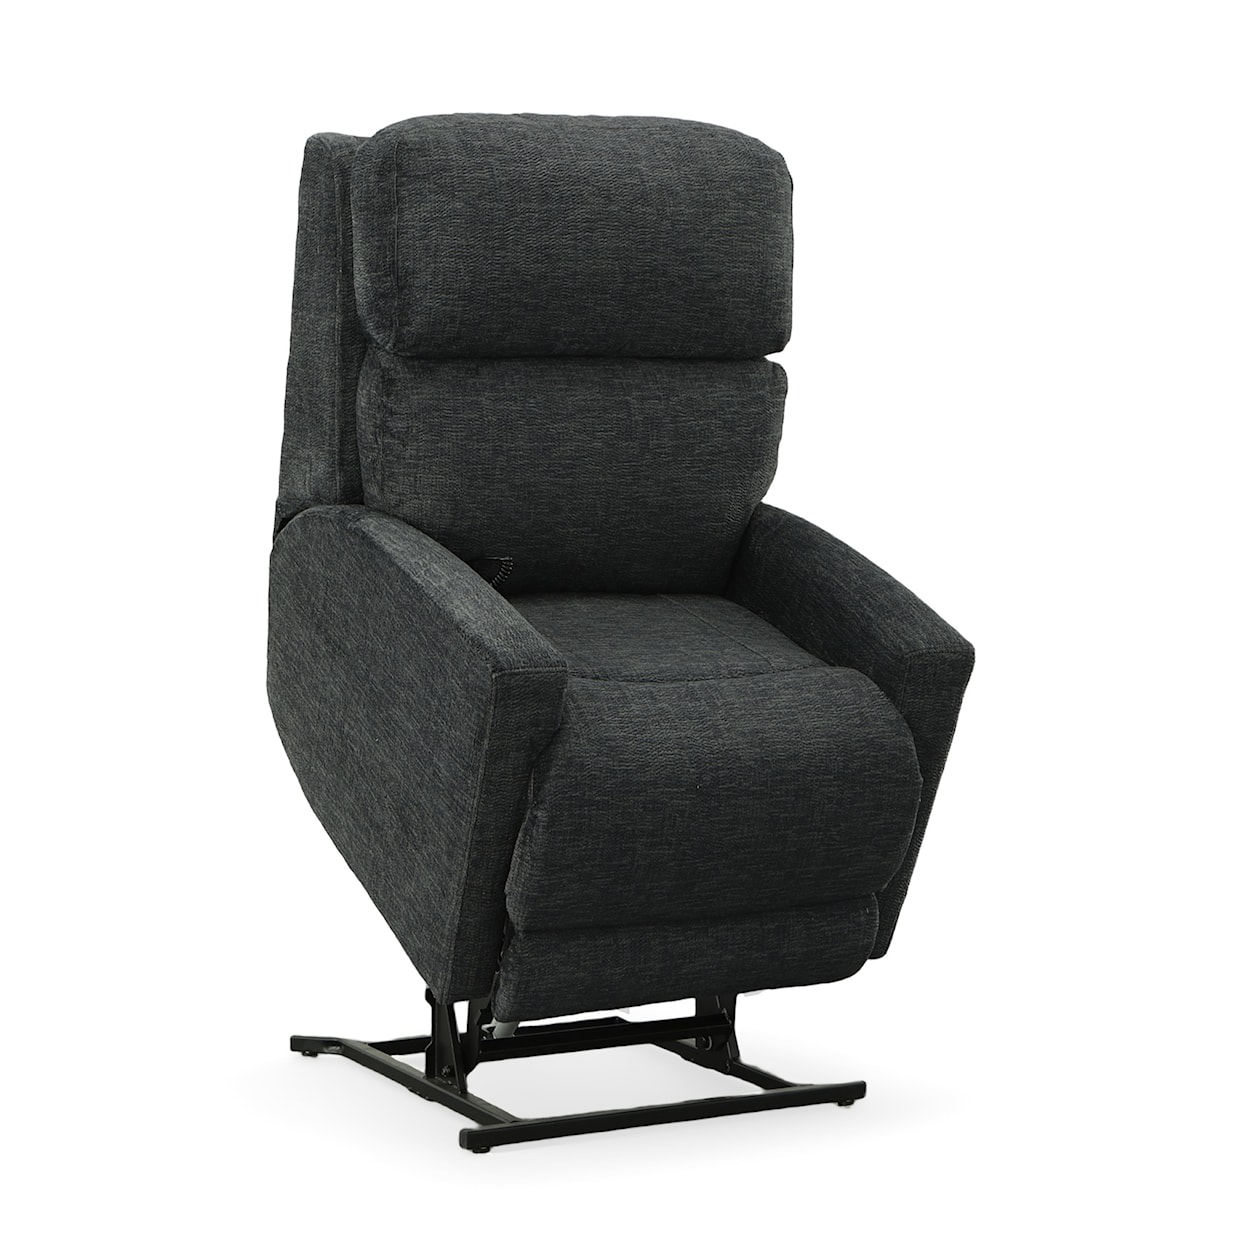 Stanton 884 Power Headrest And Lumbar Lift Chair